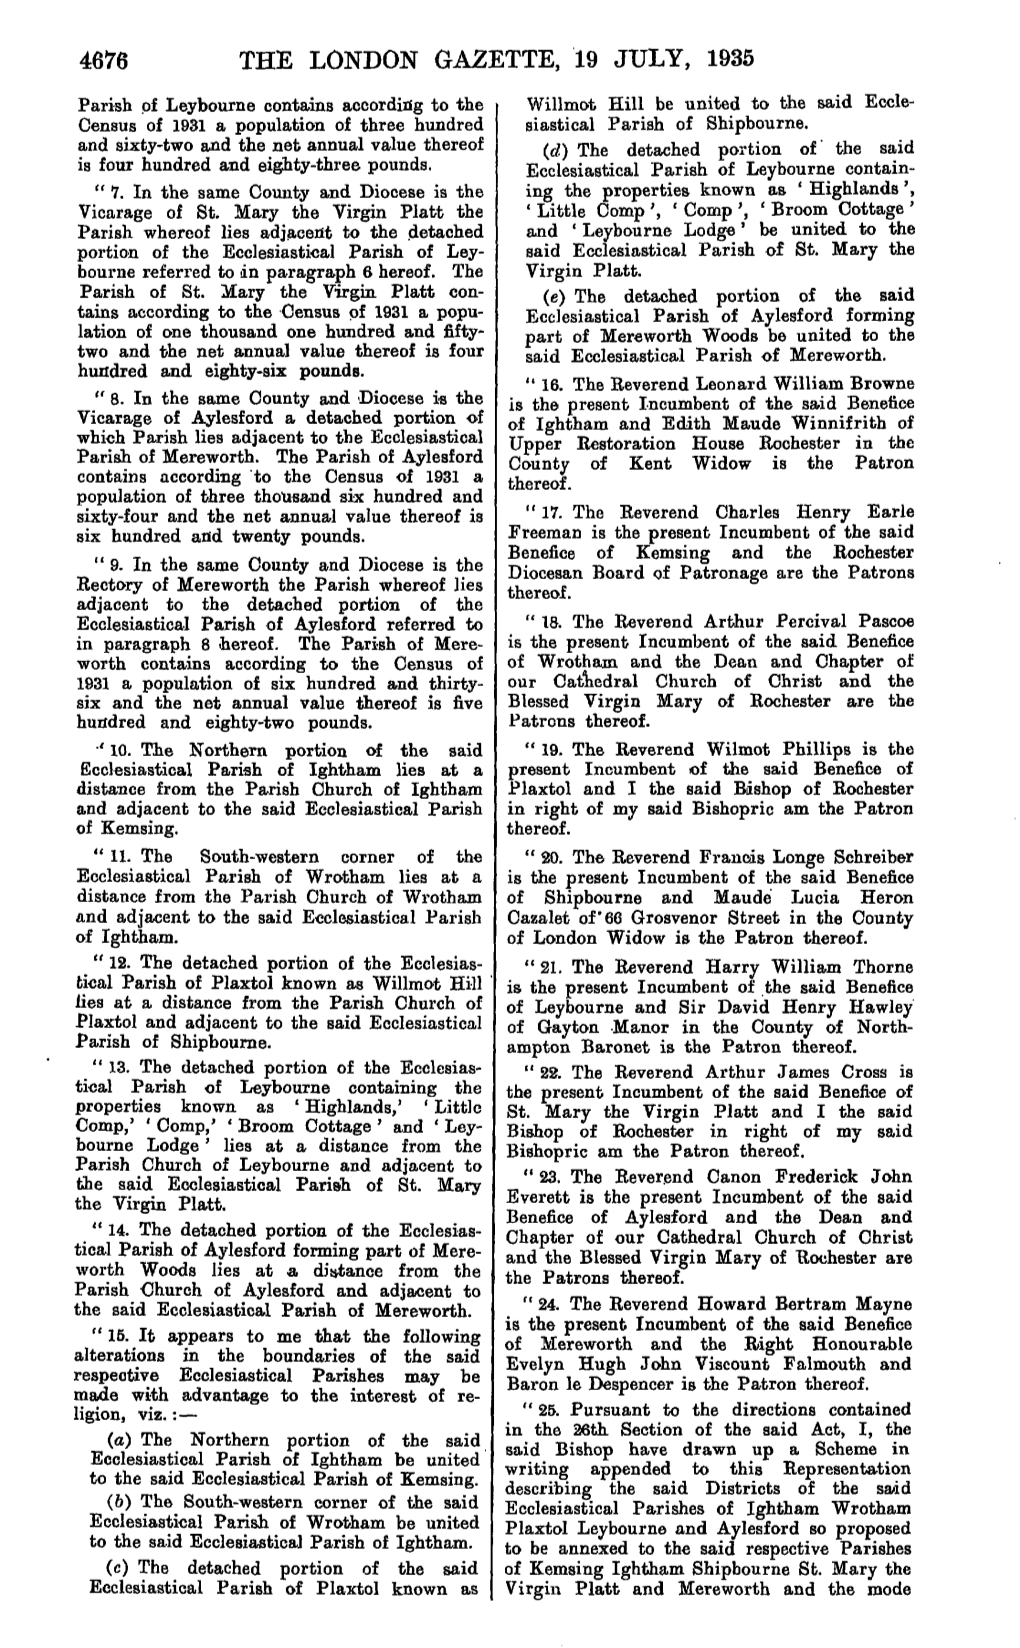 4676 the London Gazette, 19 July, 1935